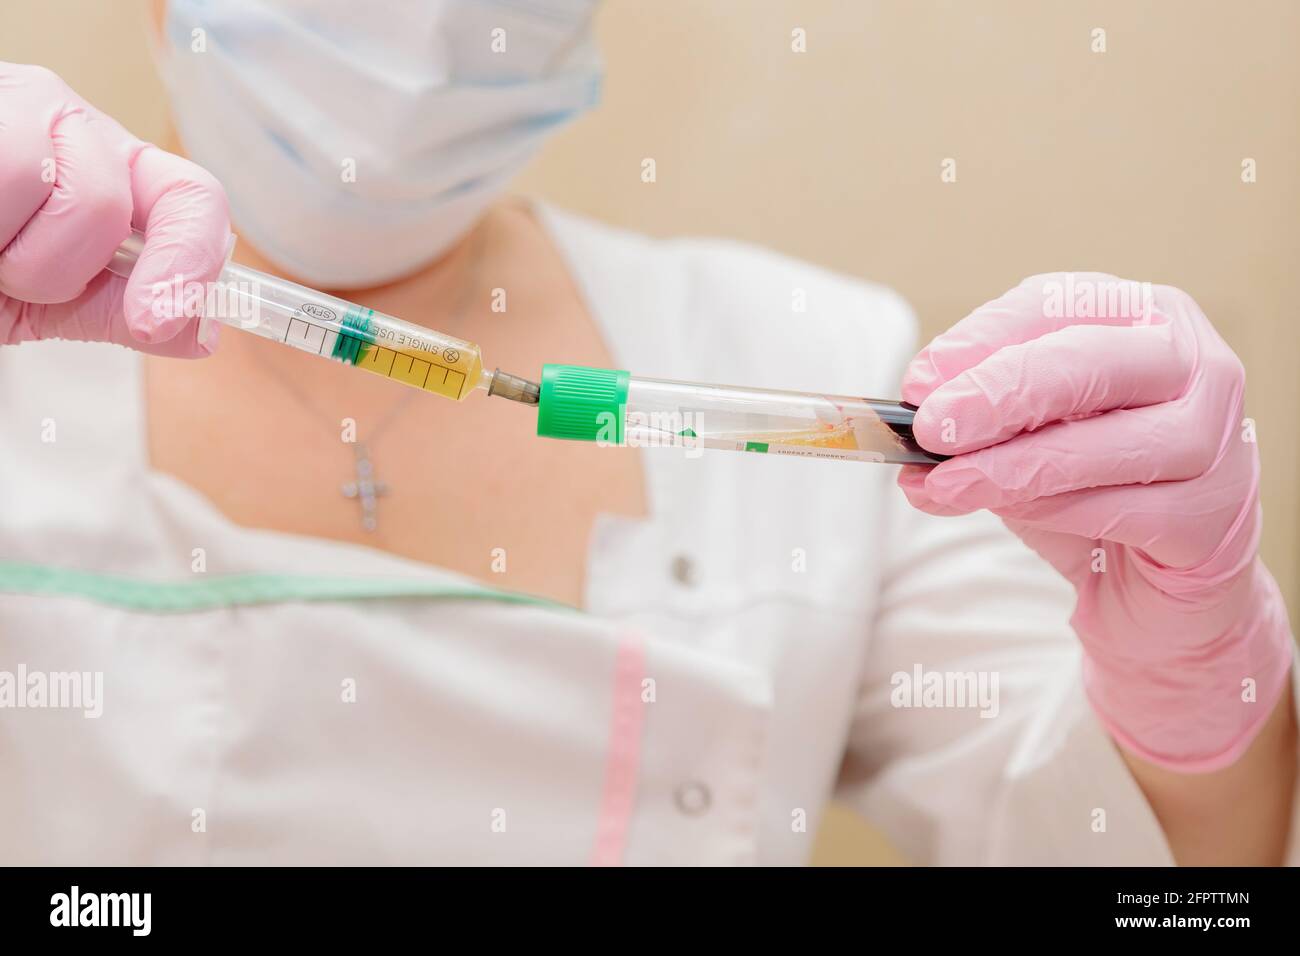 Le spécialiste prélève le plasma sanguin du tube à essai à l'aide d'une seringue. Plasmolifting, cosmétologie médicale Banque D'Images